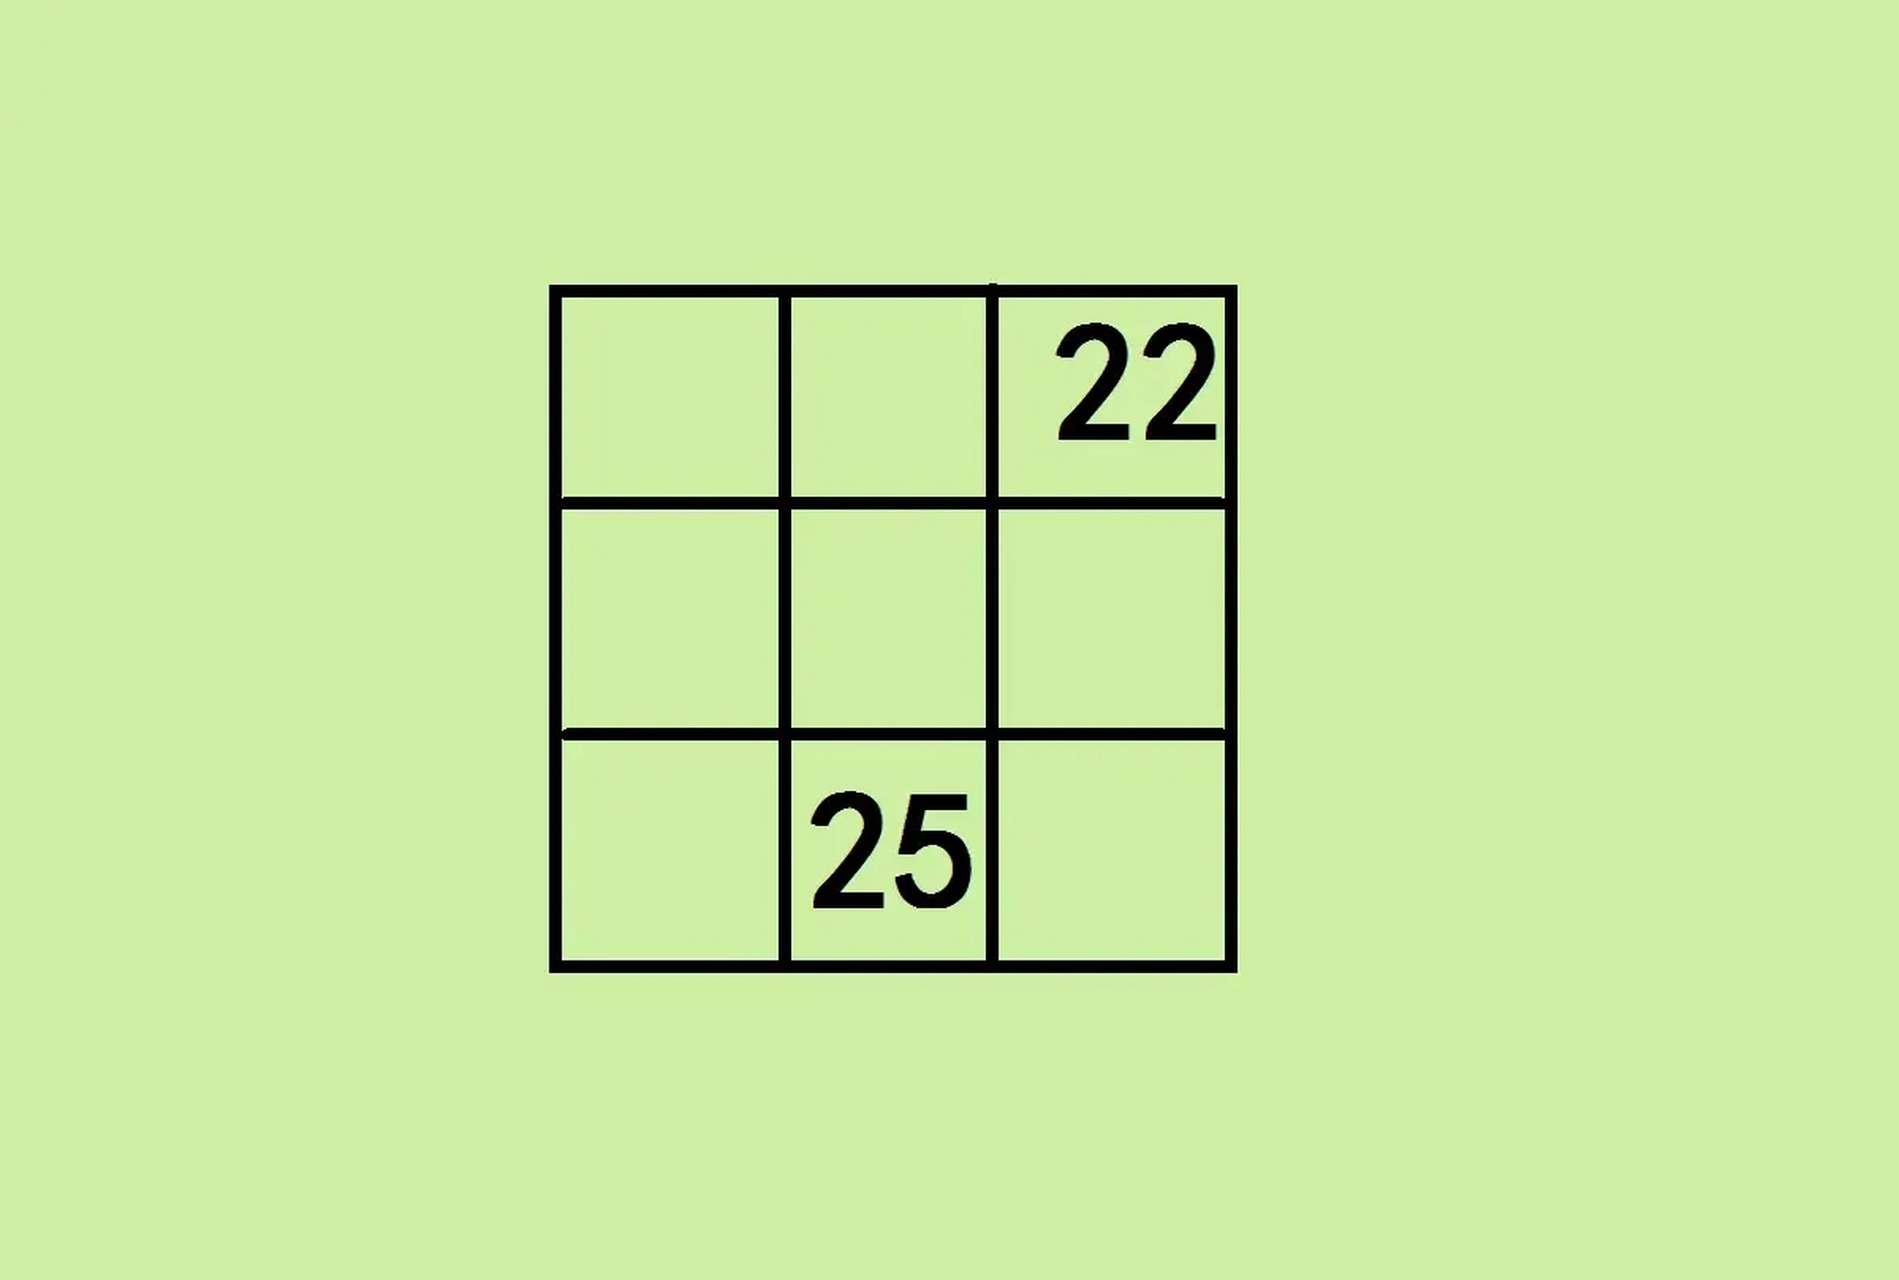 题目如图:已知是一个九宫格中有22,25两个数字,要求在剩下空格中填数